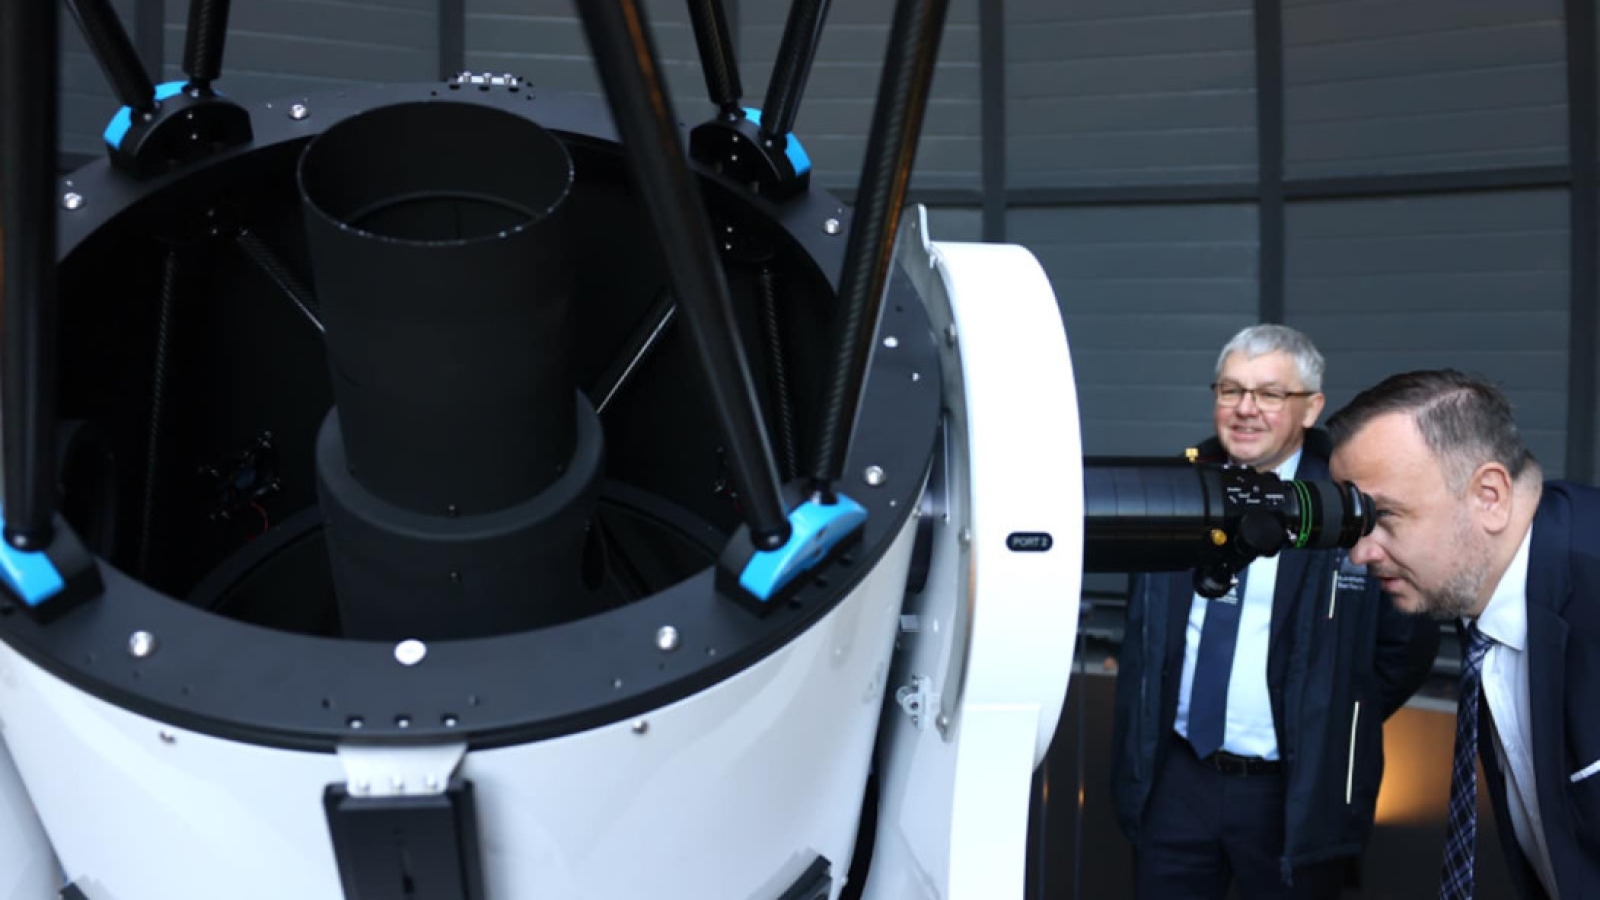 Nowe obserwatoria astronomiczne w Planetarium Śląskim